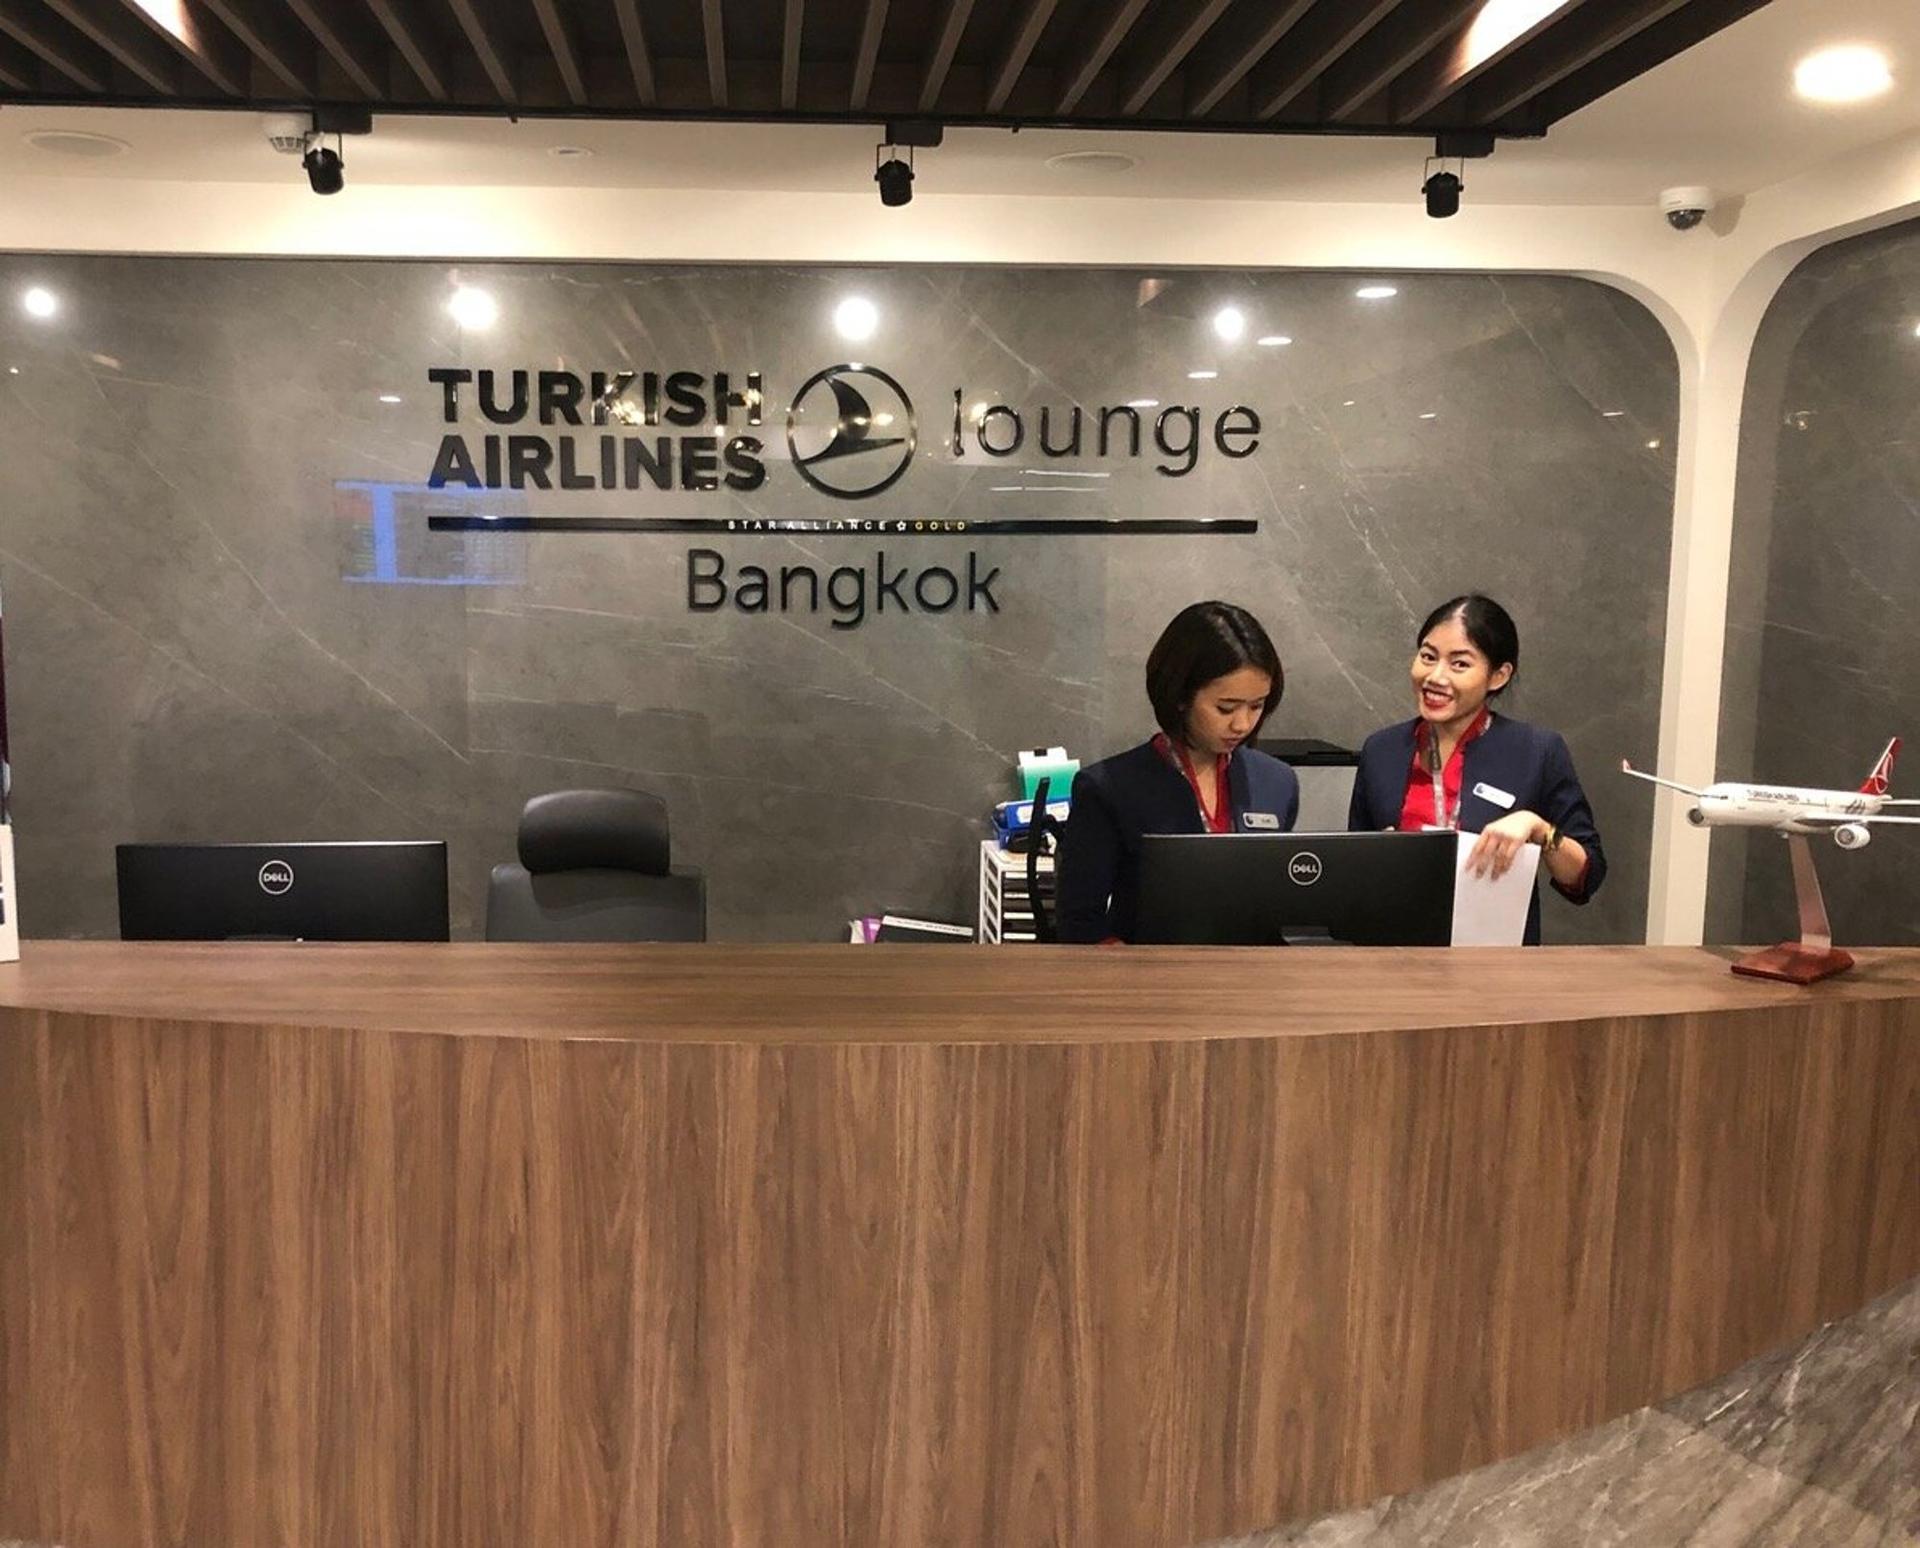 Turkish Airlines Lounge Bangkok image 20 of 29